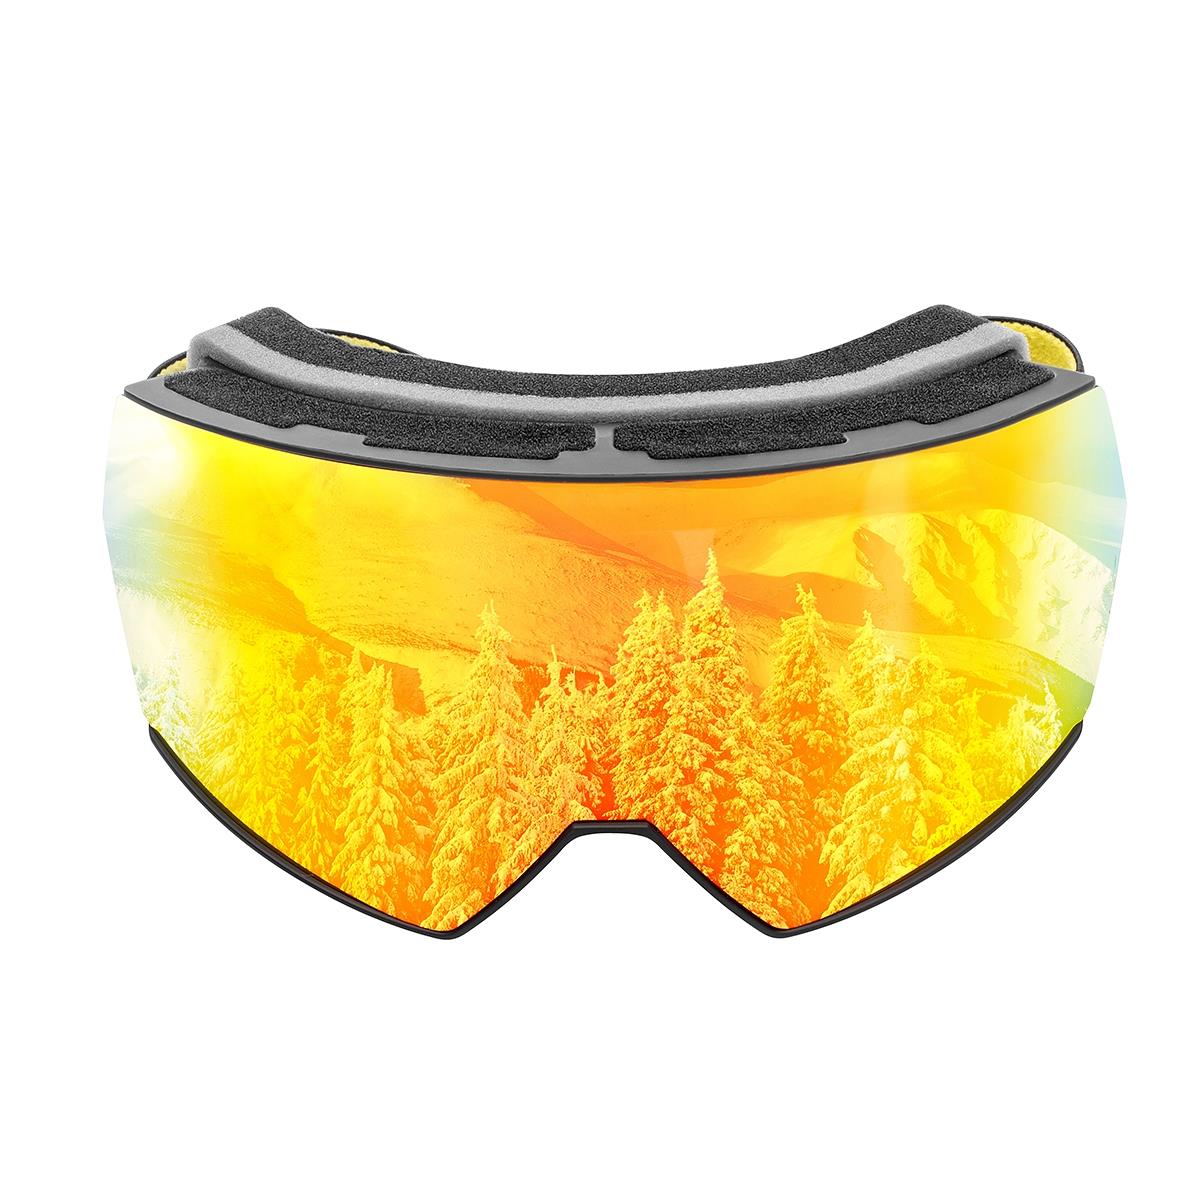 Очки горнолыжные HS-HX-010 Helios очки полумаска для плавания с берушами детские uv защита